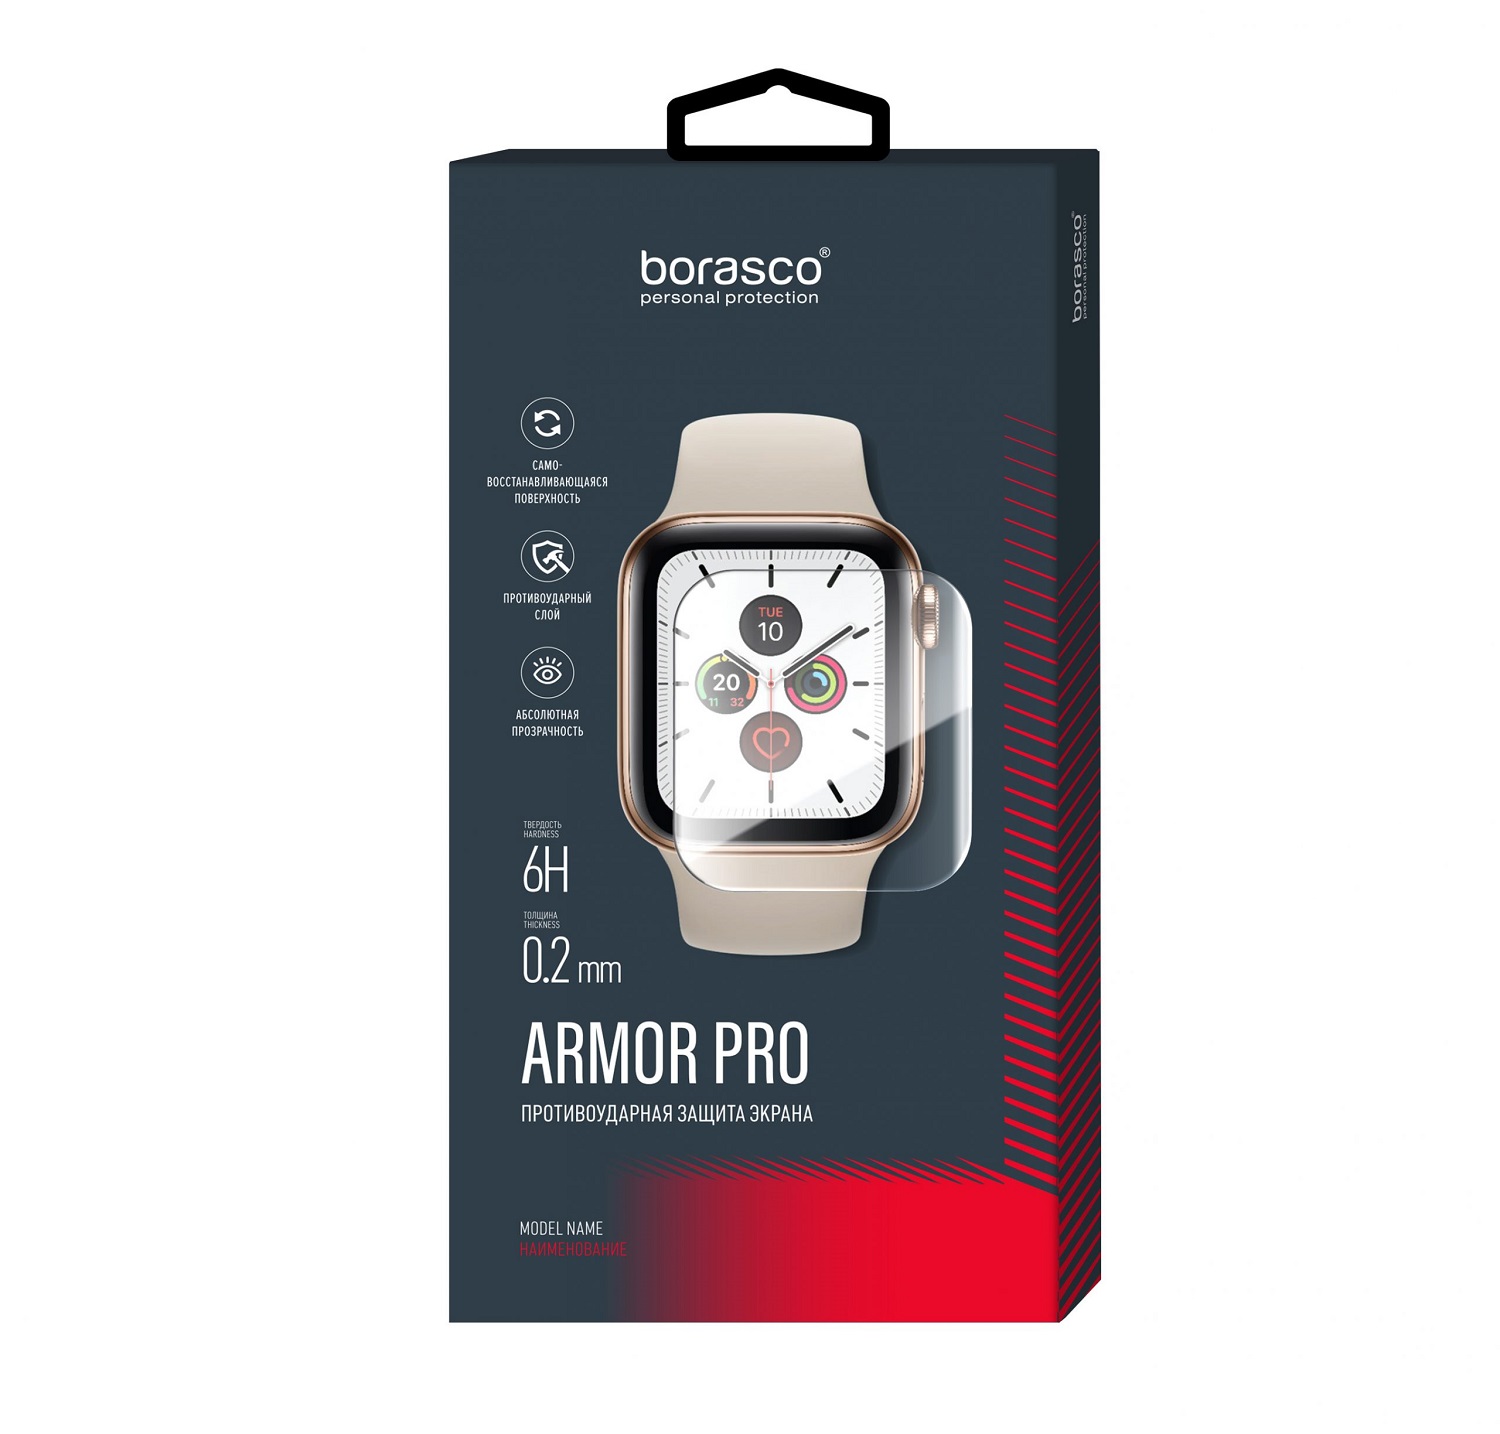 Защита экрана BoraSCO Armor Pro для Huawei Watch fit защита экрана borasco armor pro для honor watch se